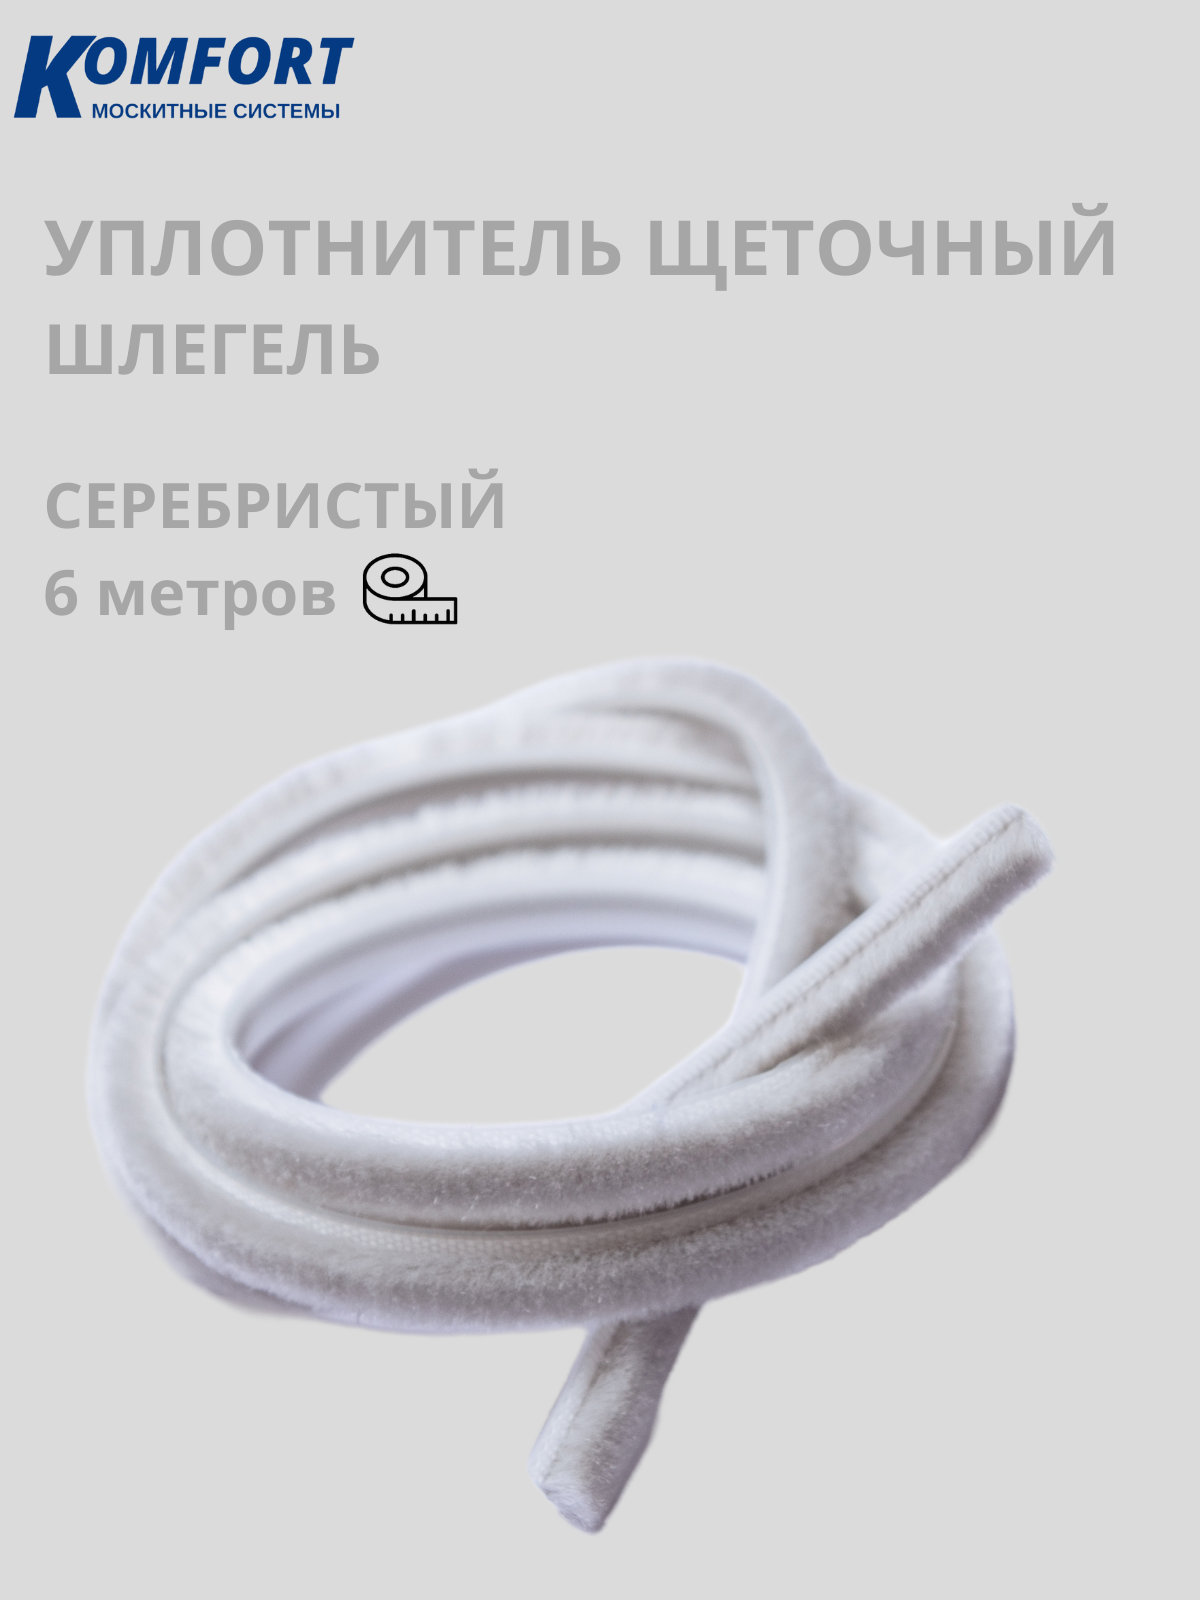 Фетр уплотнитель Komfort для москитных сеток щеточный самоклеящийся 7*6 мм серебро 6 м шнур для москитной сетки komfort москитные системы